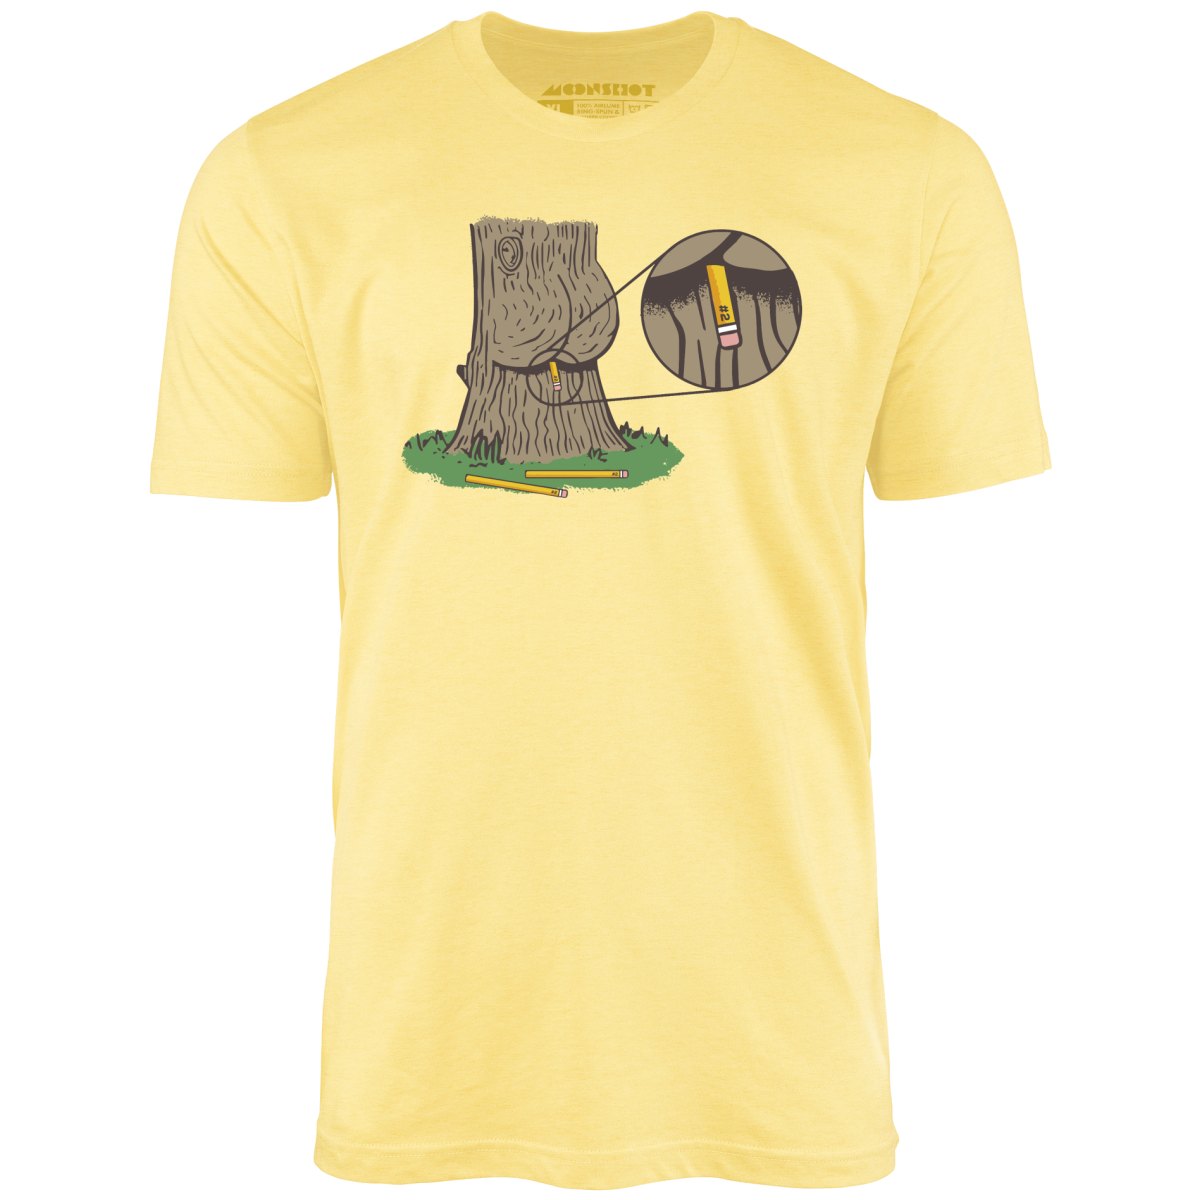 Do Trees Poop? - Unisex T-Shirt